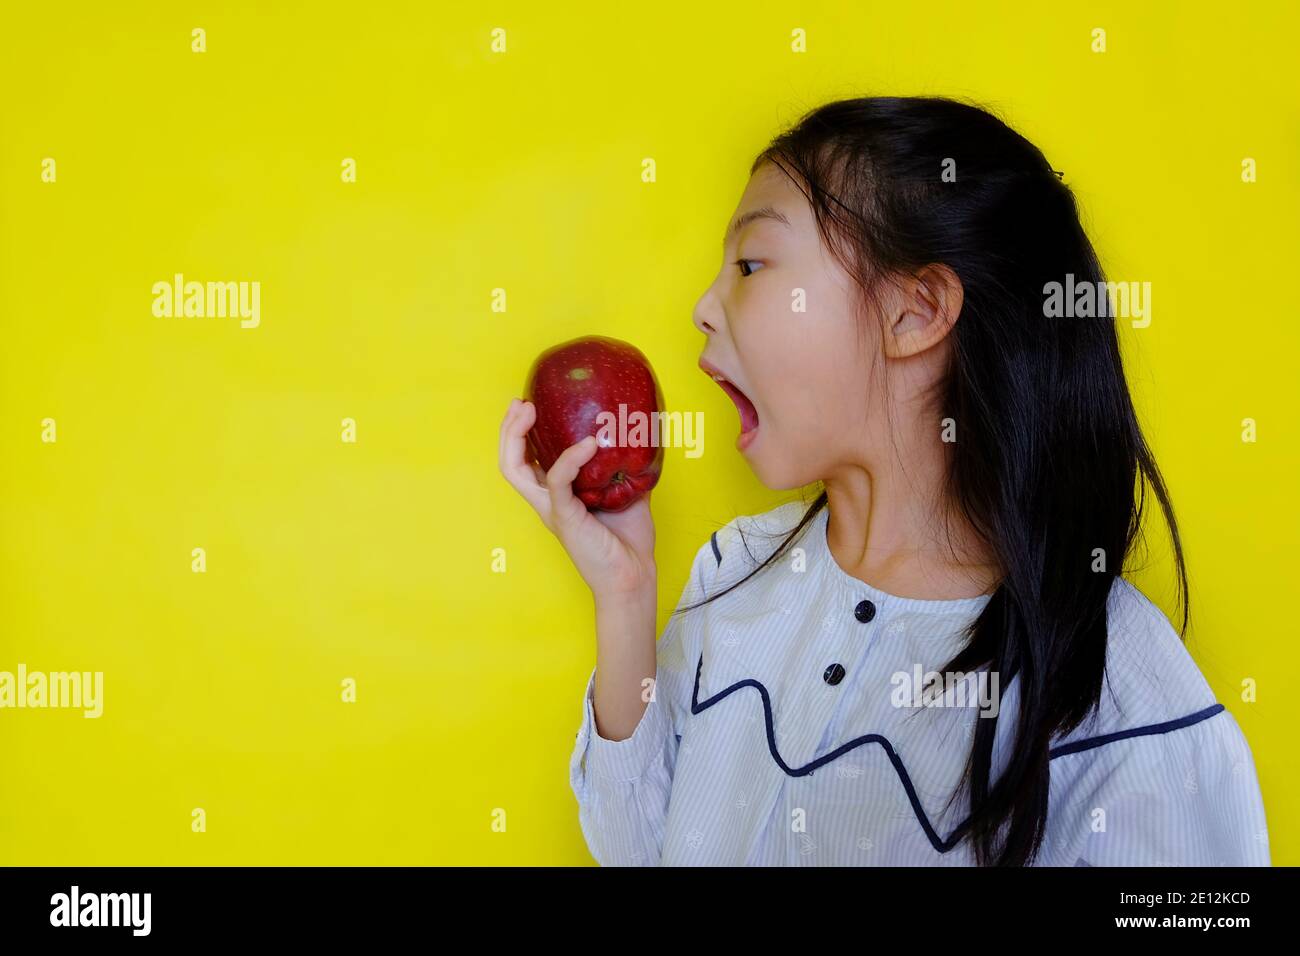 Une jolie jeune fille asiatique attrapant une pomme rouge, essayant de prendre une morsure. Arrière-plan jaune vif. Banque D'Images